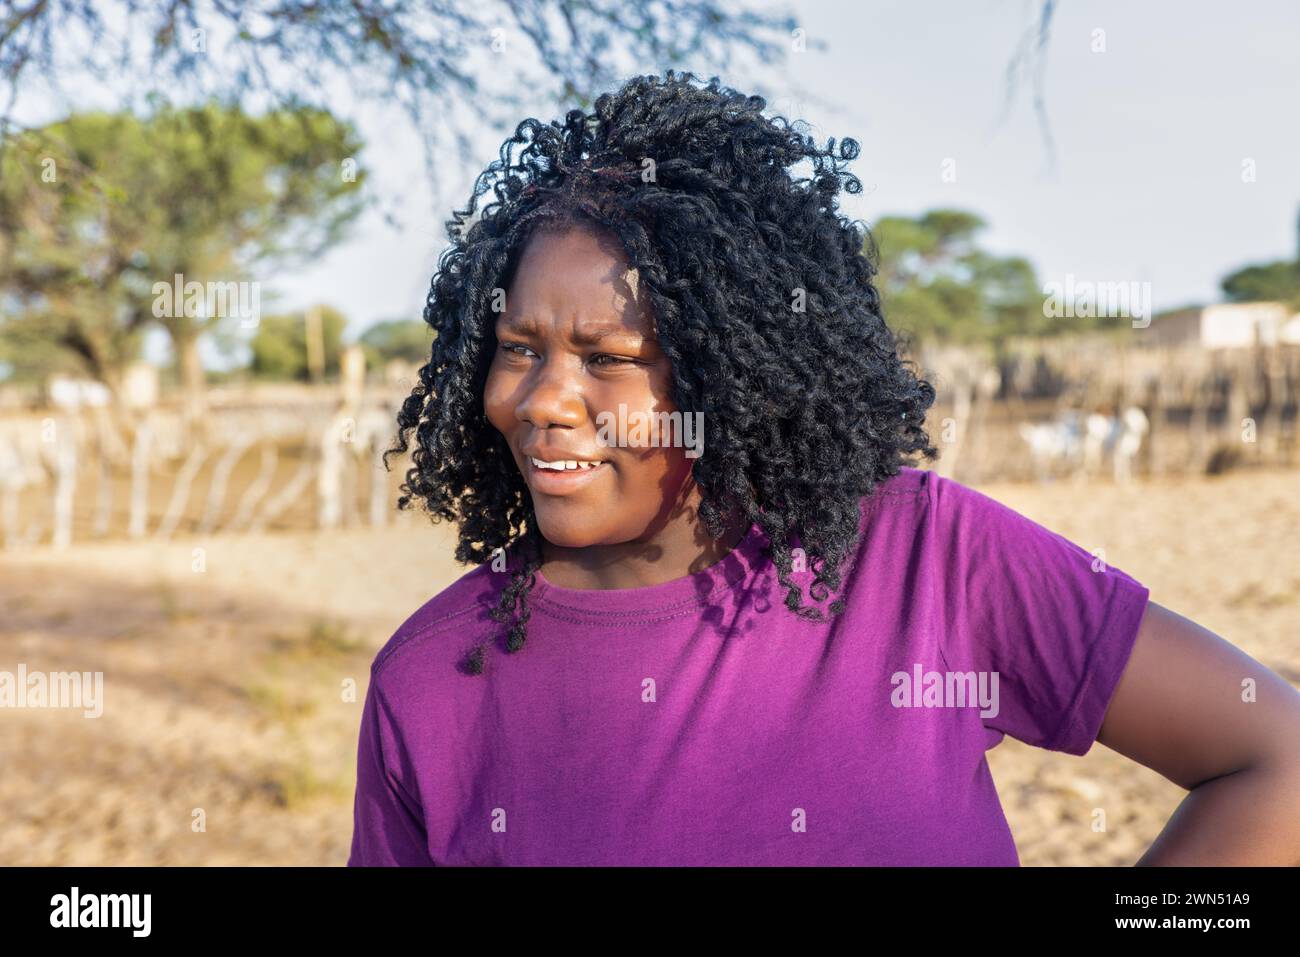 donna africana con trecce , nel villaggio, in piedi di fronte al kraal con piccolo bestiame Foto Stock